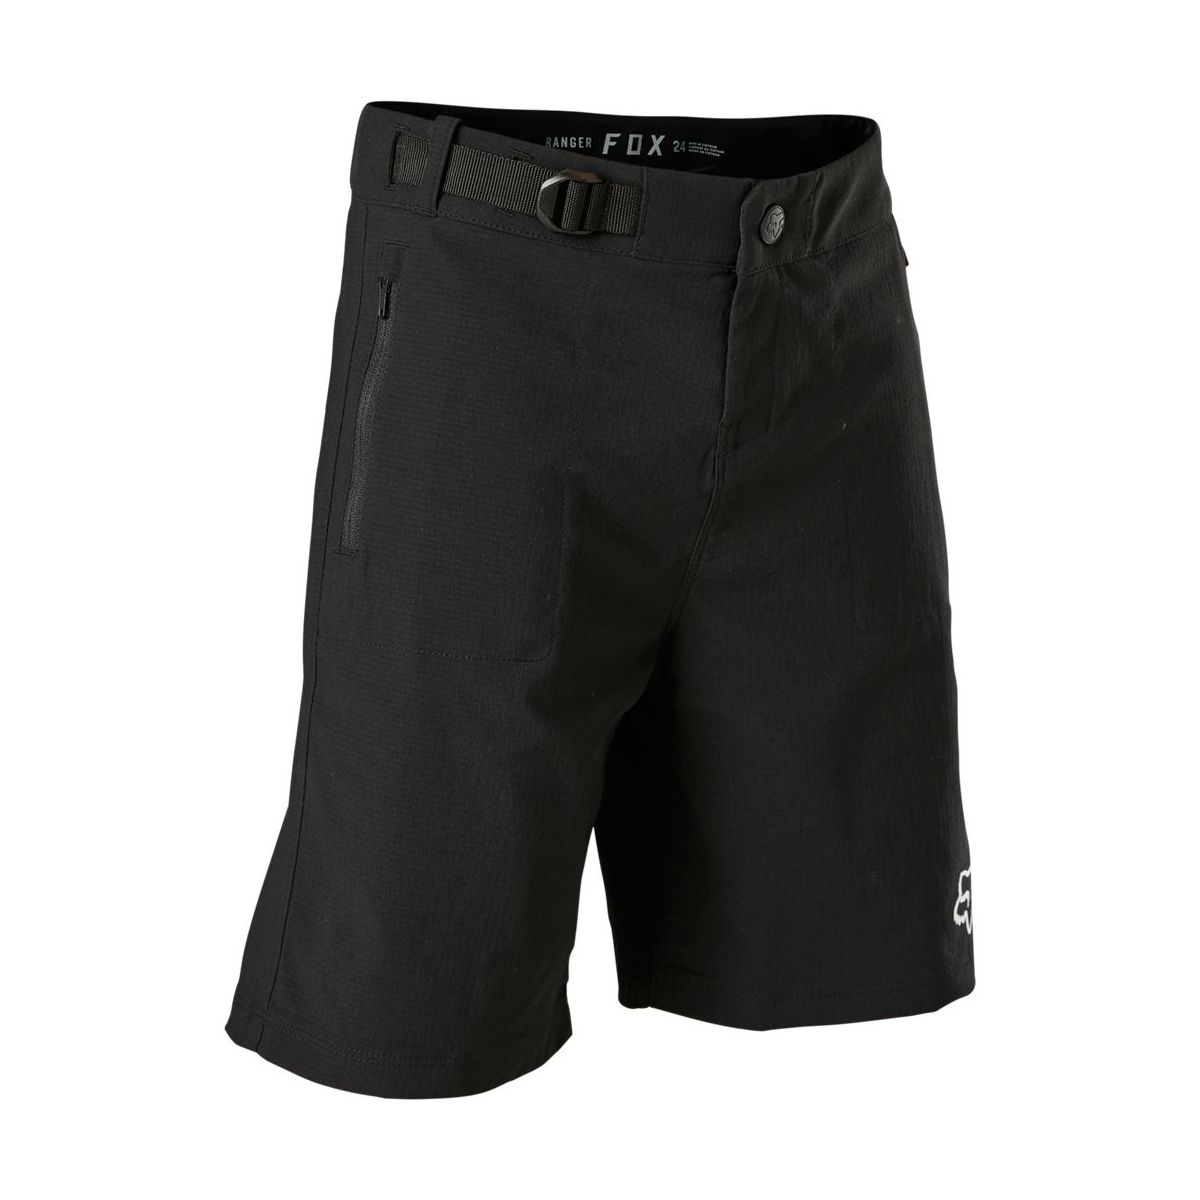 Pantalones cortos MTB Fox Ranger niño en color negro | pantalones cortos de bici con bolsillo de cremallera